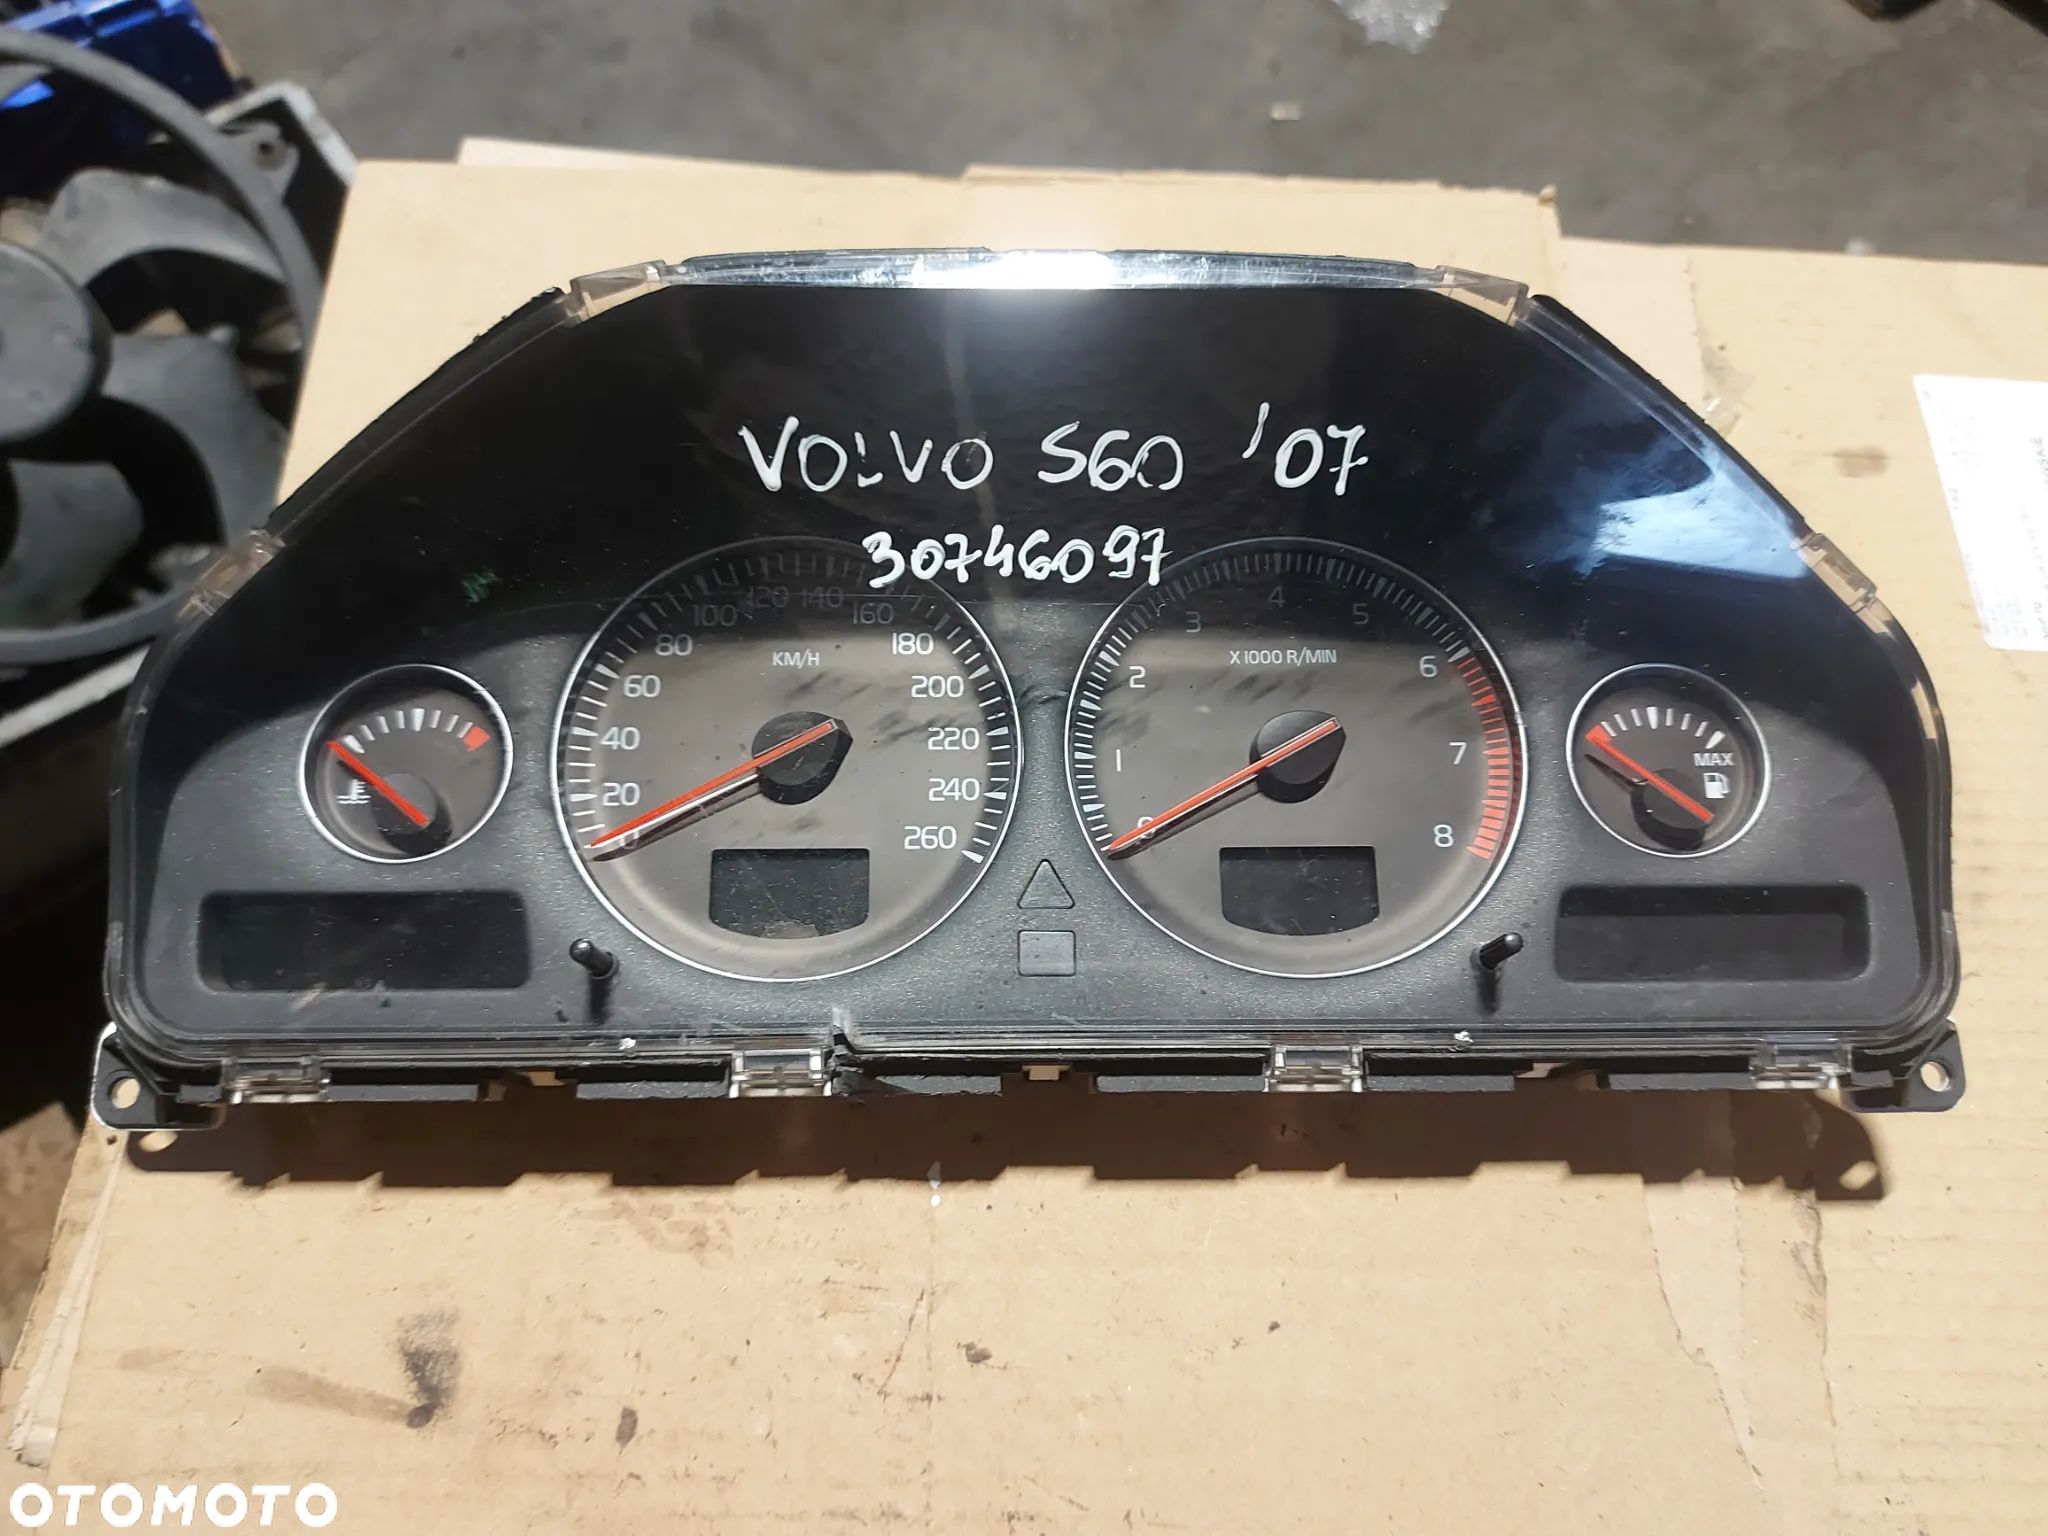 Licznik zegar Volvo S60 '07r 30746097 - 1